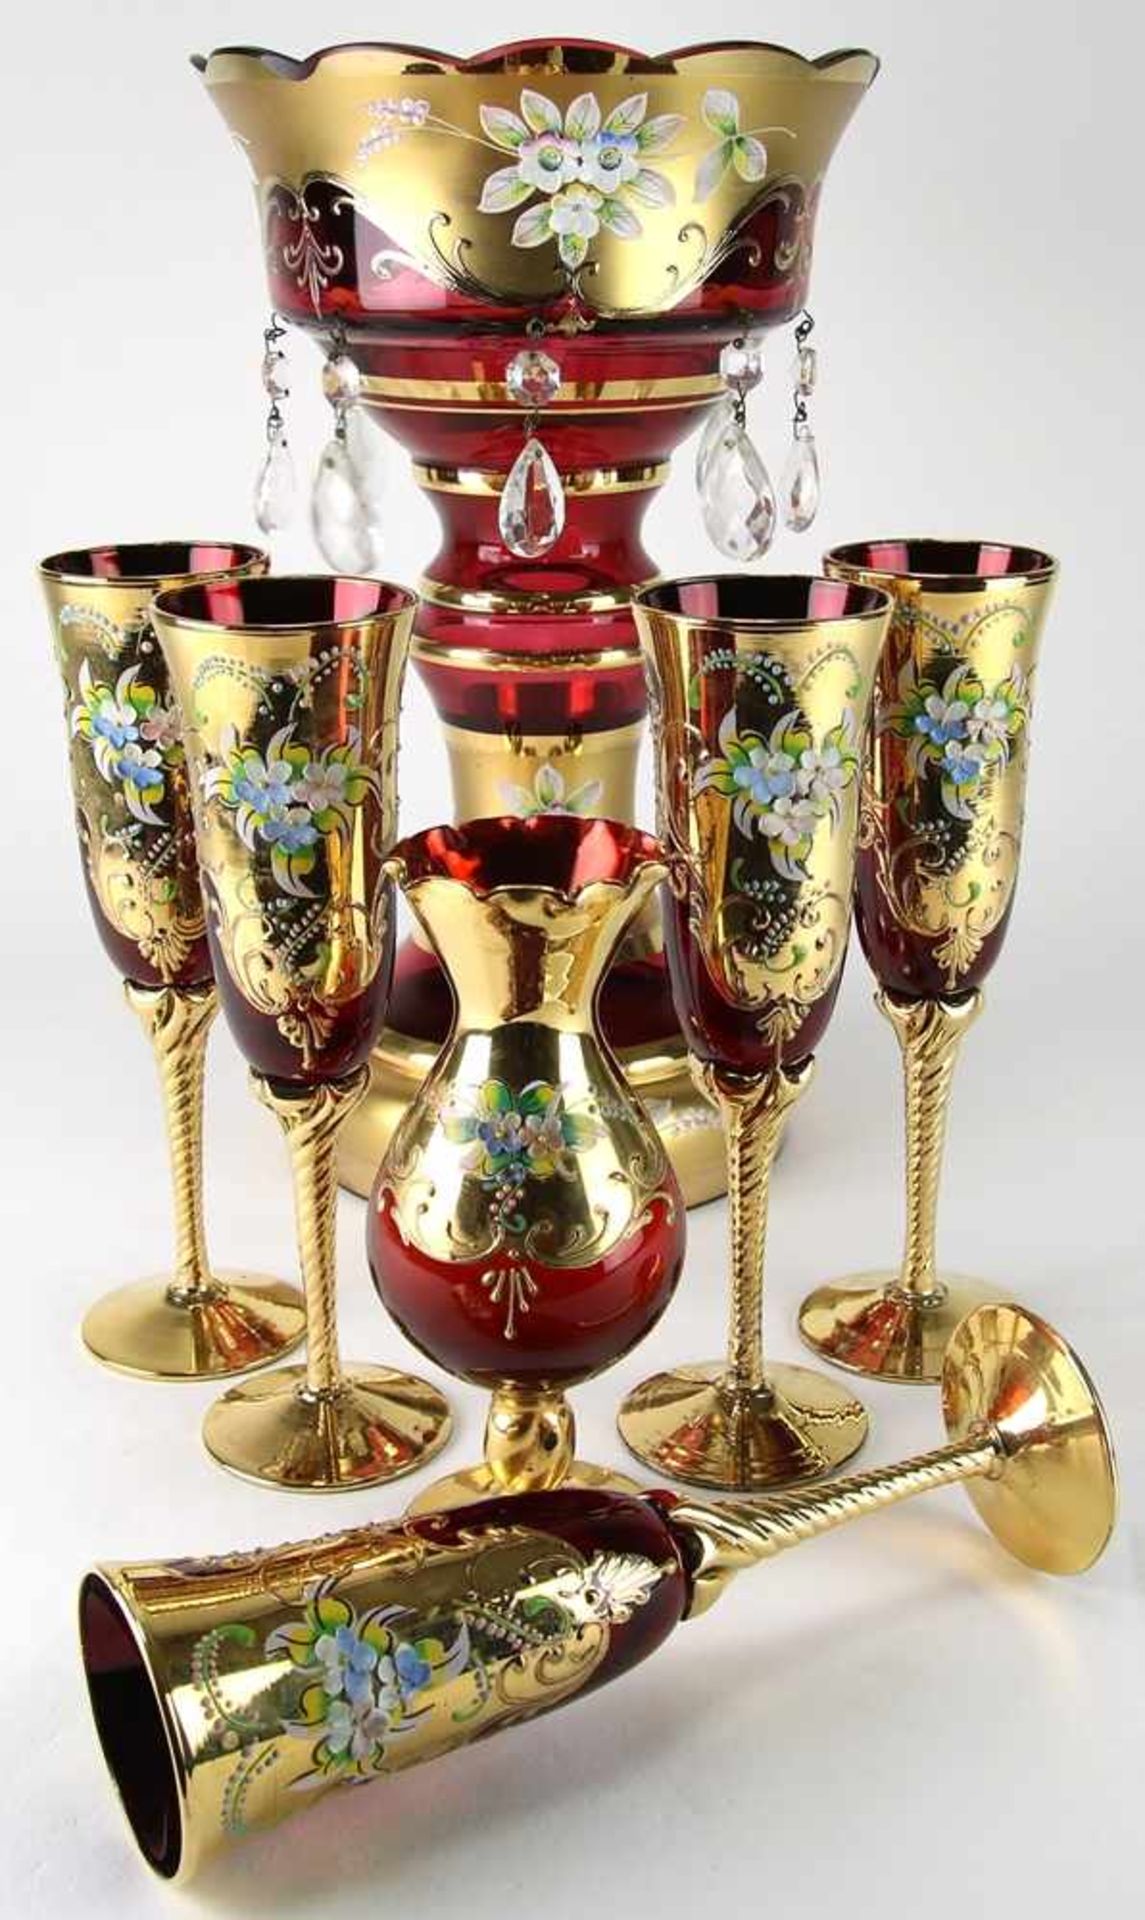 Konvolut böhmisches Glas20. Jh. Rotes Farbglas mit reichem Golddekor und polychromer, floraler